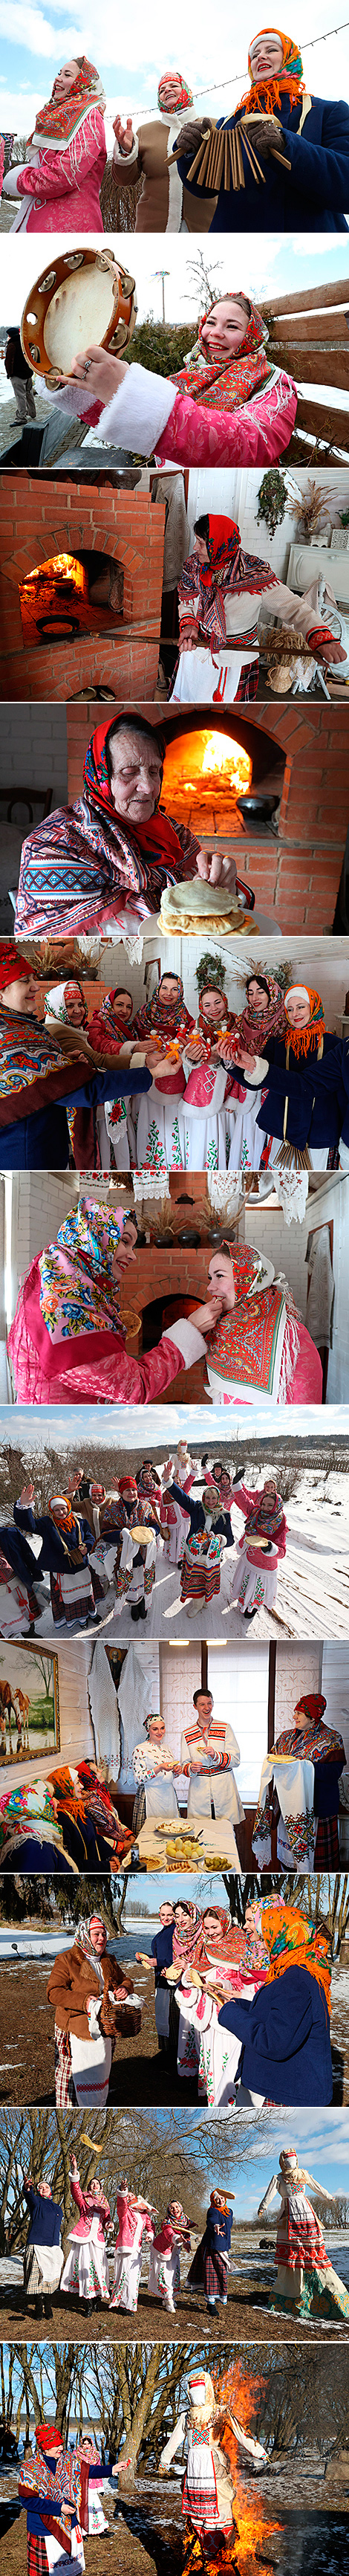 莫吉廖夫州谢肉节庆祝活动的美好传统